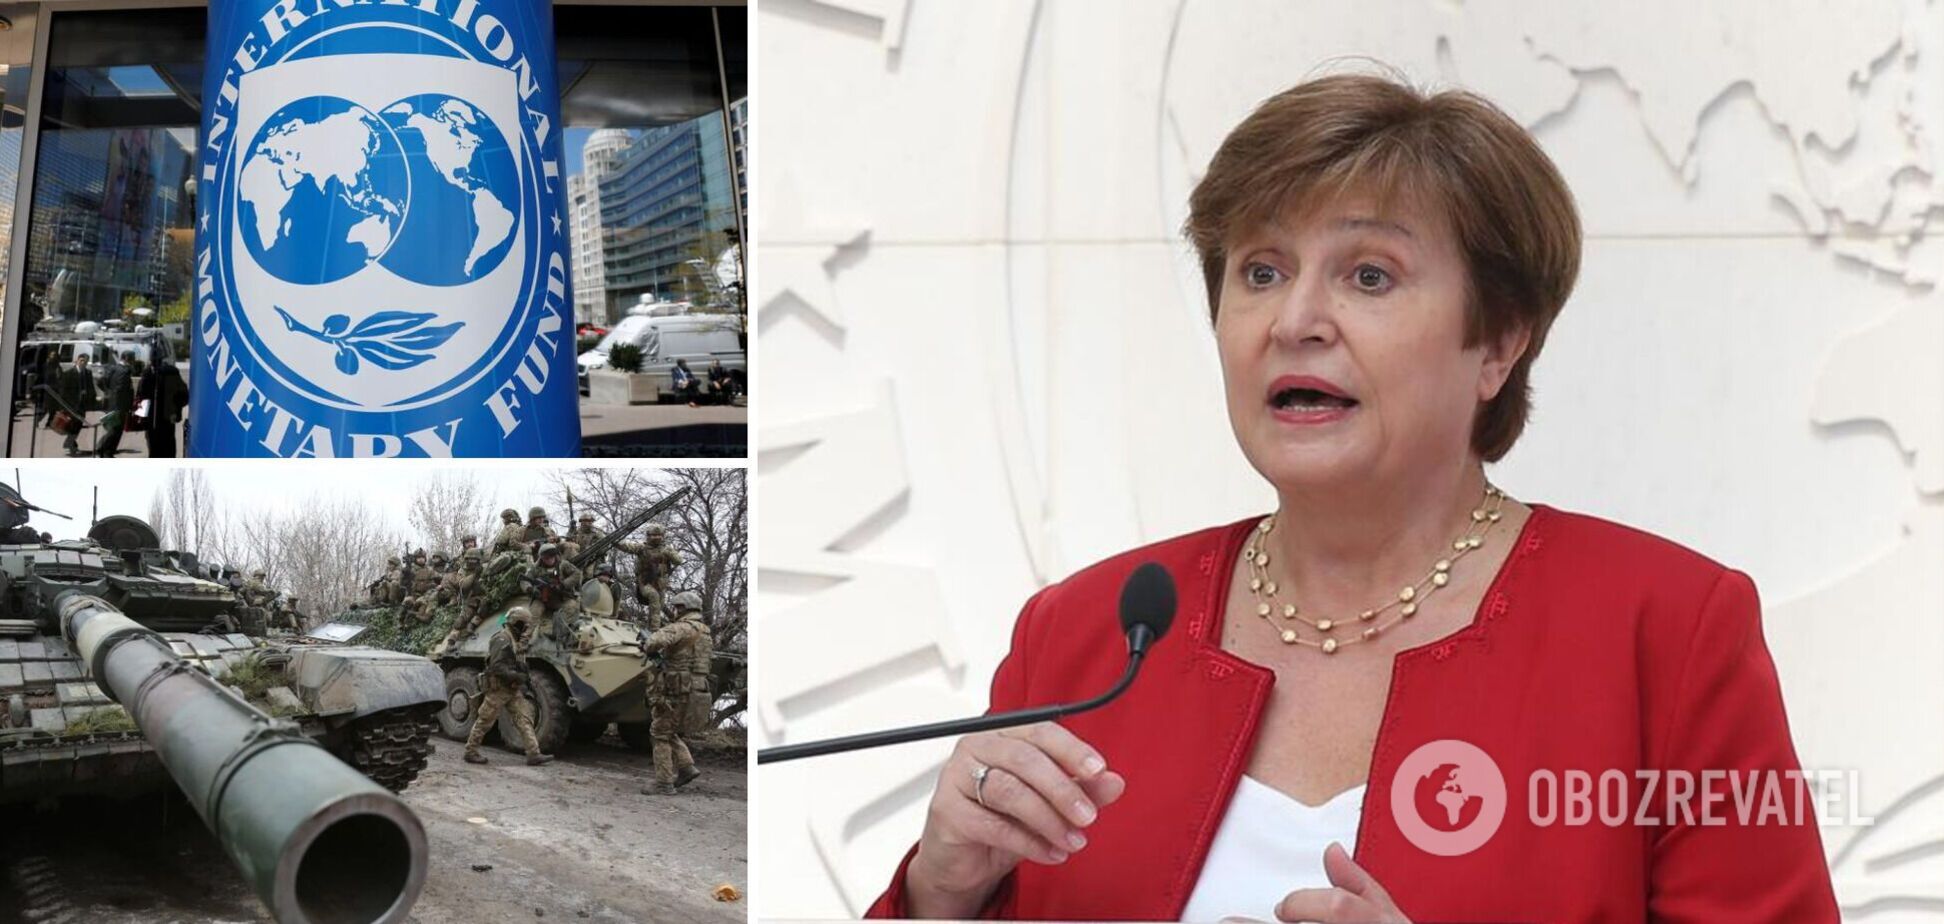 Георгиева заявила, что война в Украине скажется на 143 странах мира